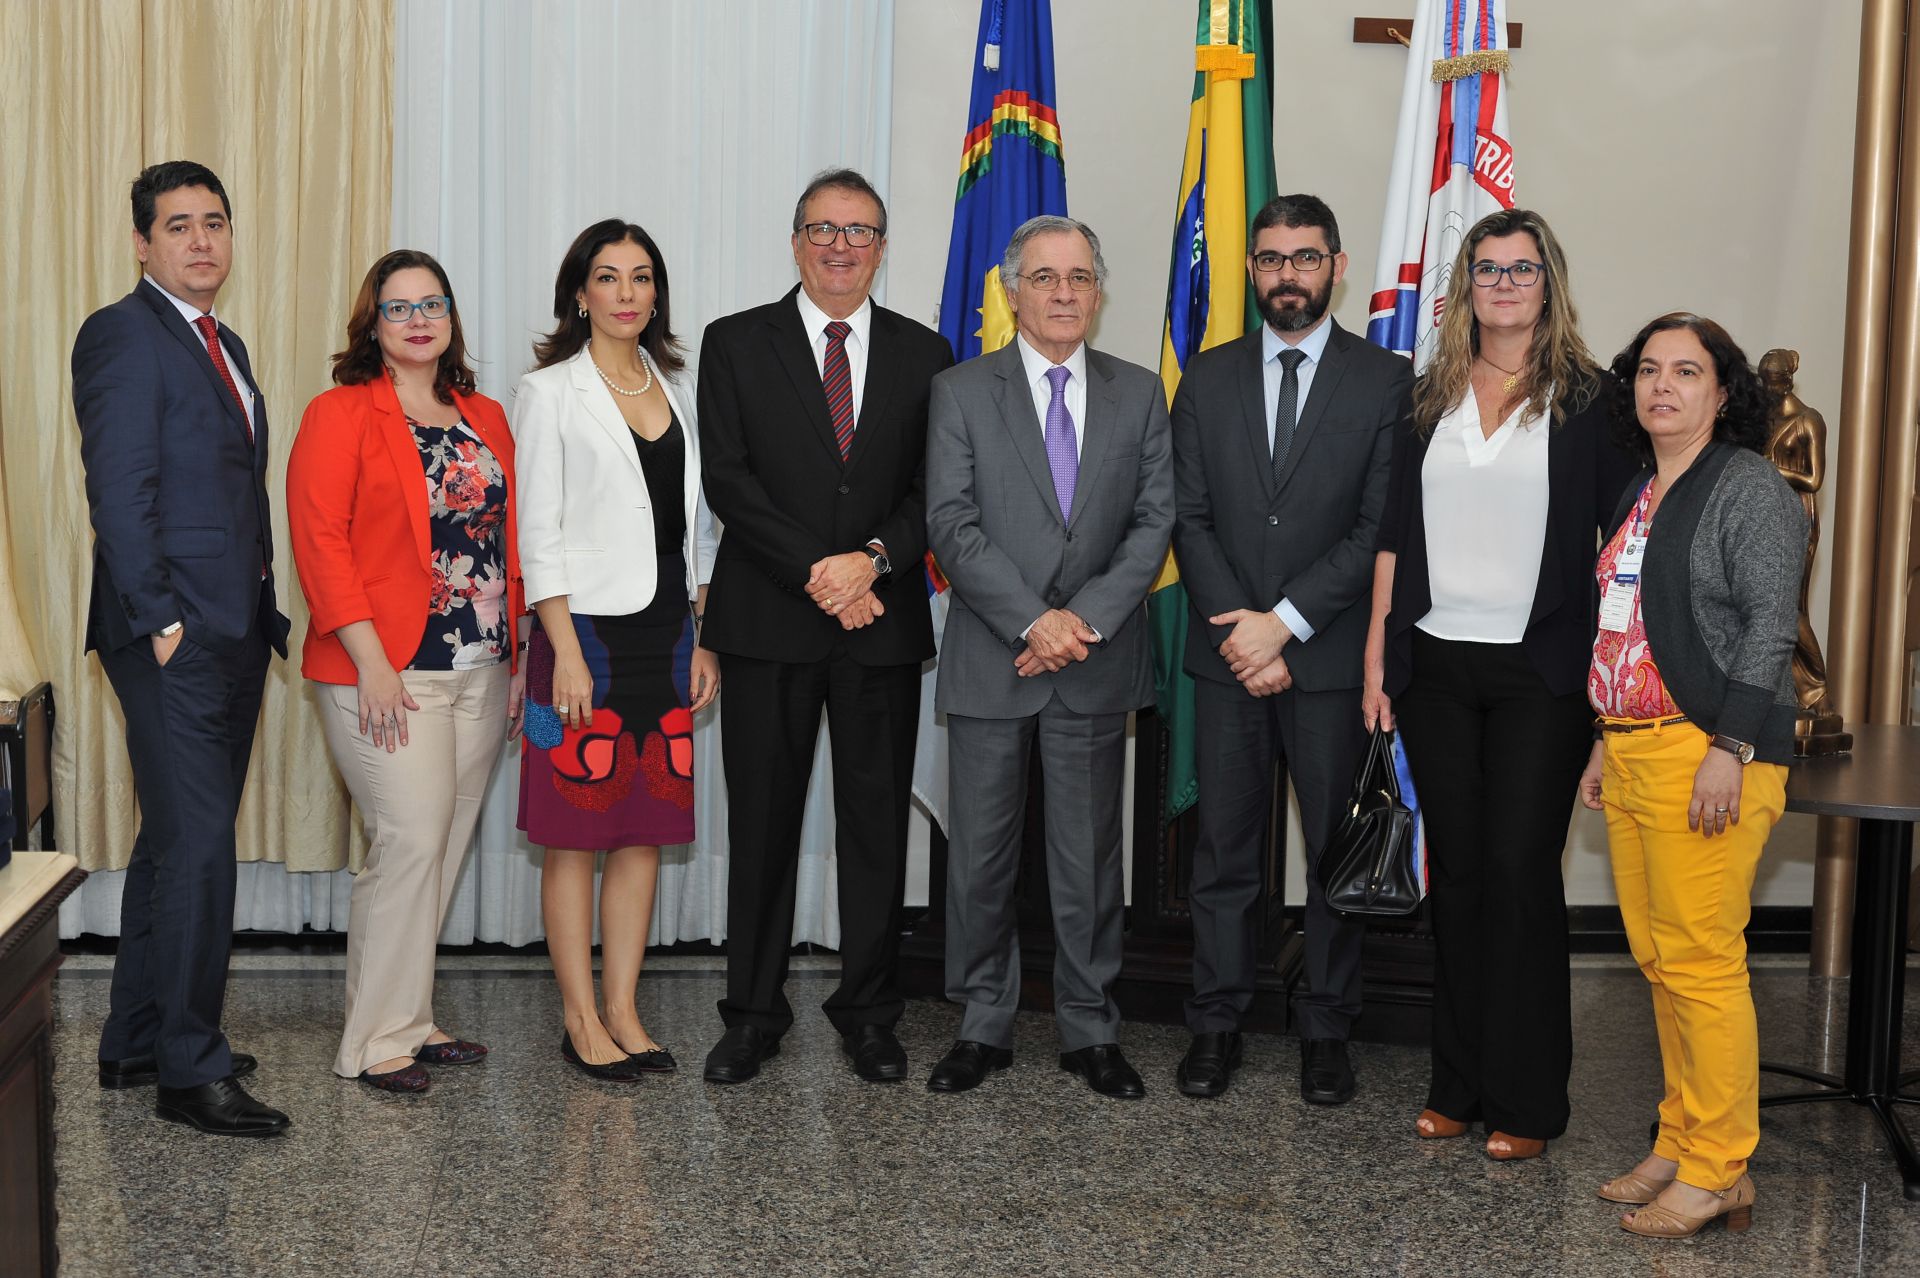 Representantes dos órgãos integrantes do Comitê de Saúde posam para foto oficial no Gabinete da Presidência do TJPE